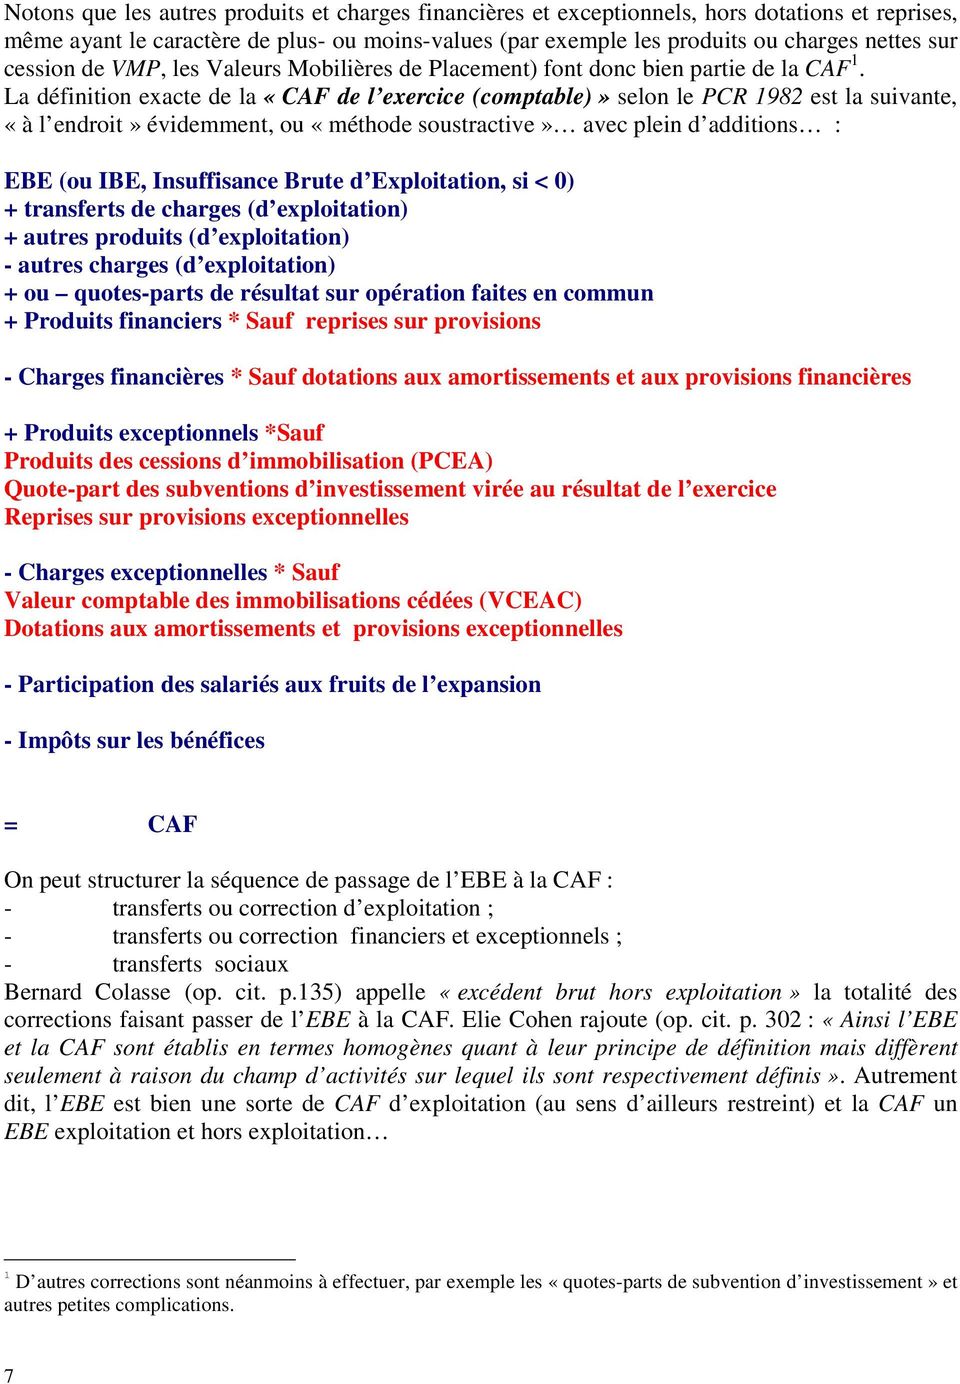 La définition exacte de la «CAF de l exercice (comptable)» selon le PCR 1982 est la suivante, «à l endroit» évidemment, ou «méthode soustractive» avec plein d additions : EBE (ou IBE, Insuffisance